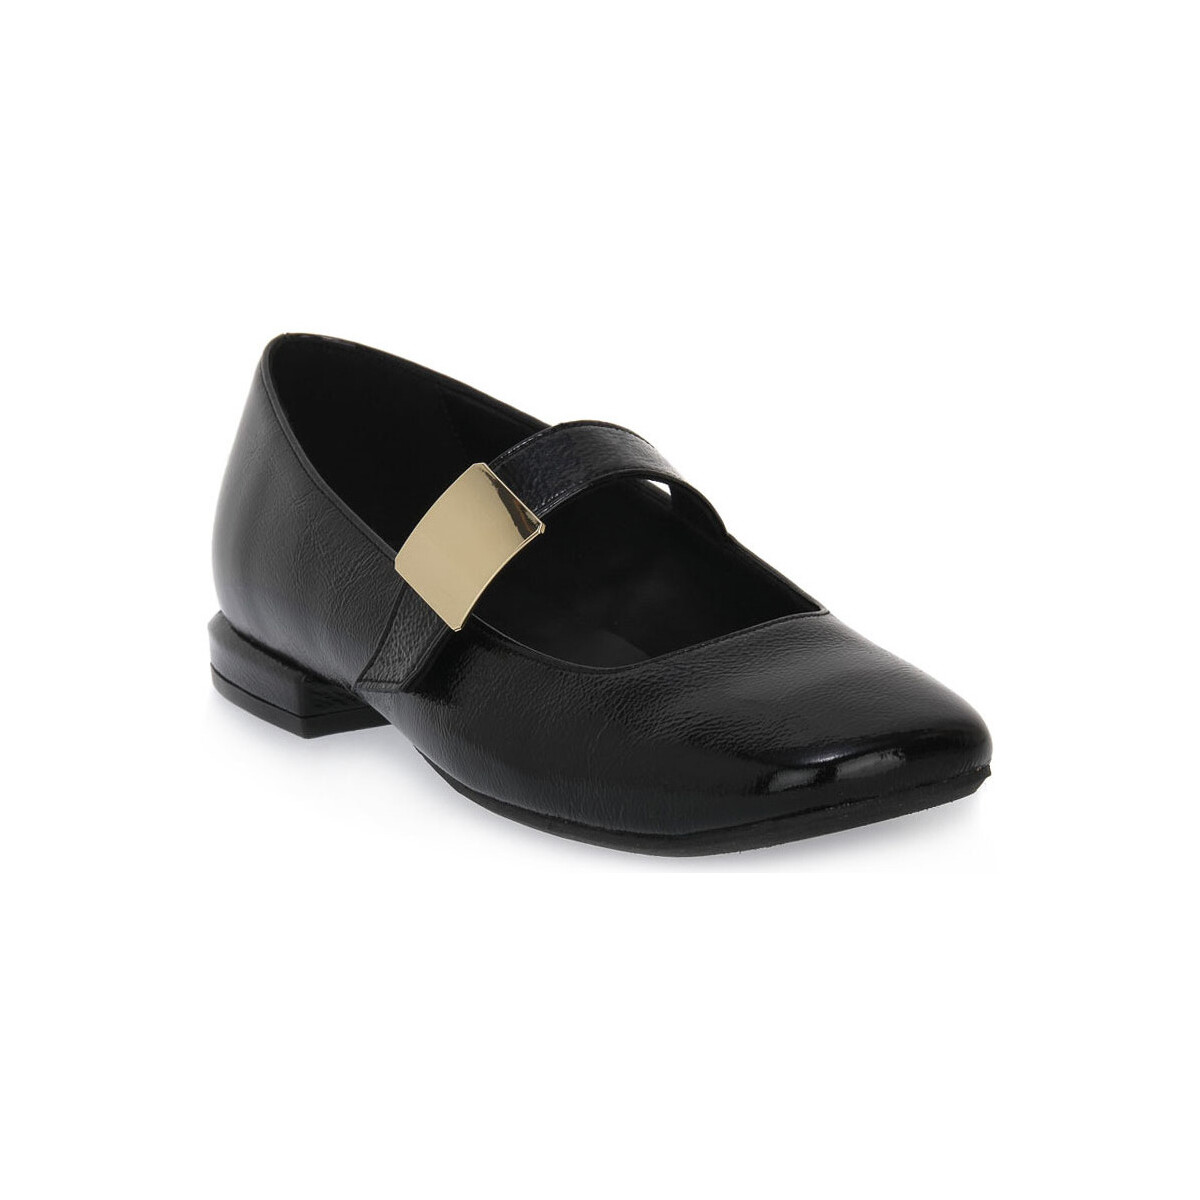 Παπούτσια Γυναίκα Μπαλαρίνες S.piero BLACK HEEL SQUARED Black